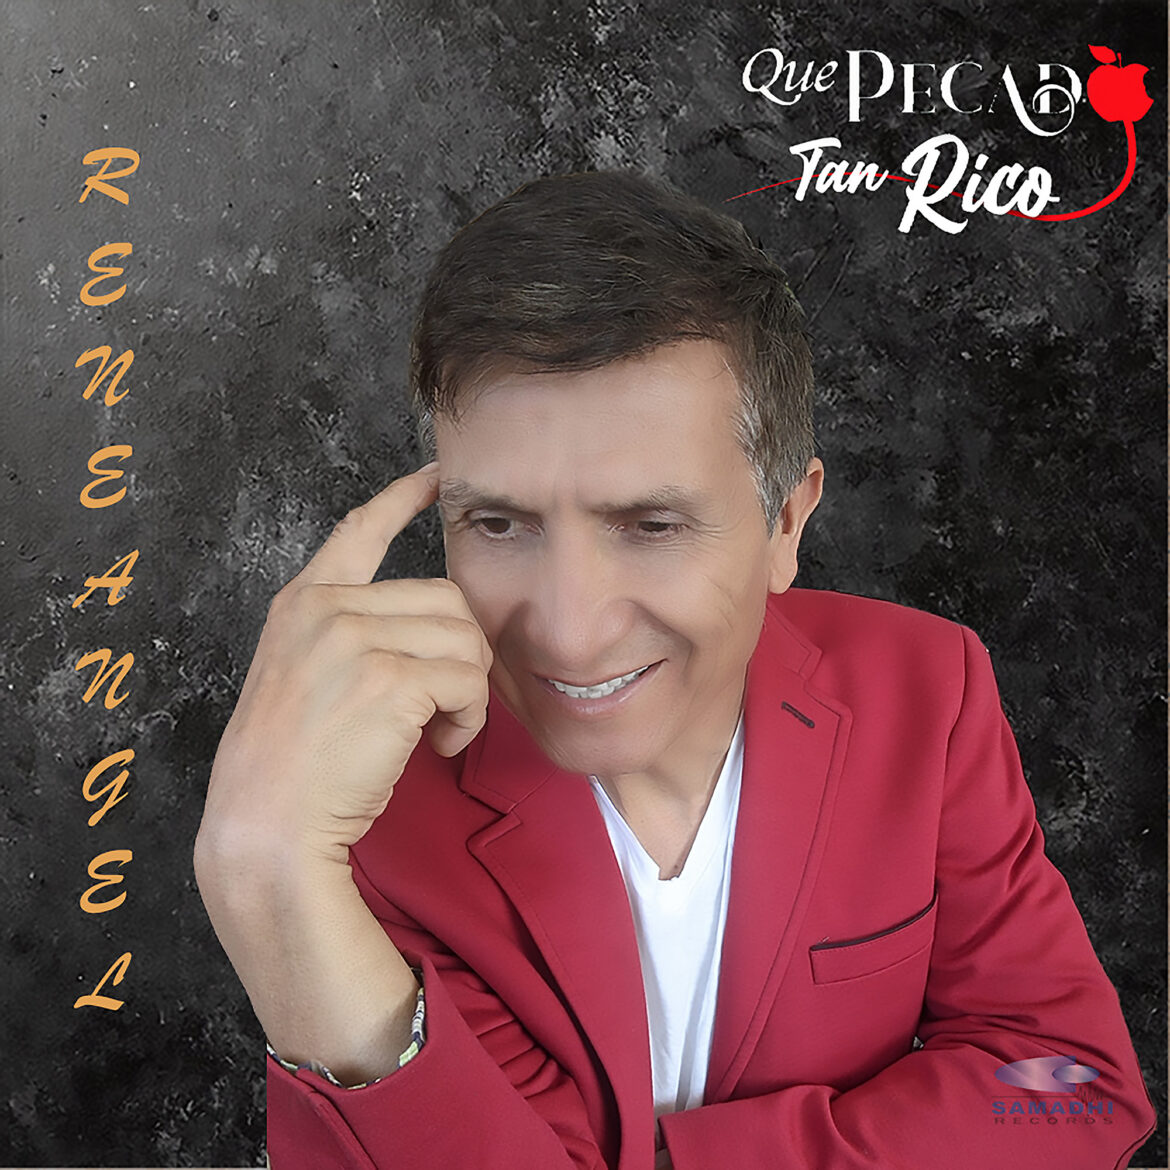 Rene Ángel le apuesta a los sonidos populares con su nuevo sencillo “Qué Pecado Tan Rico”